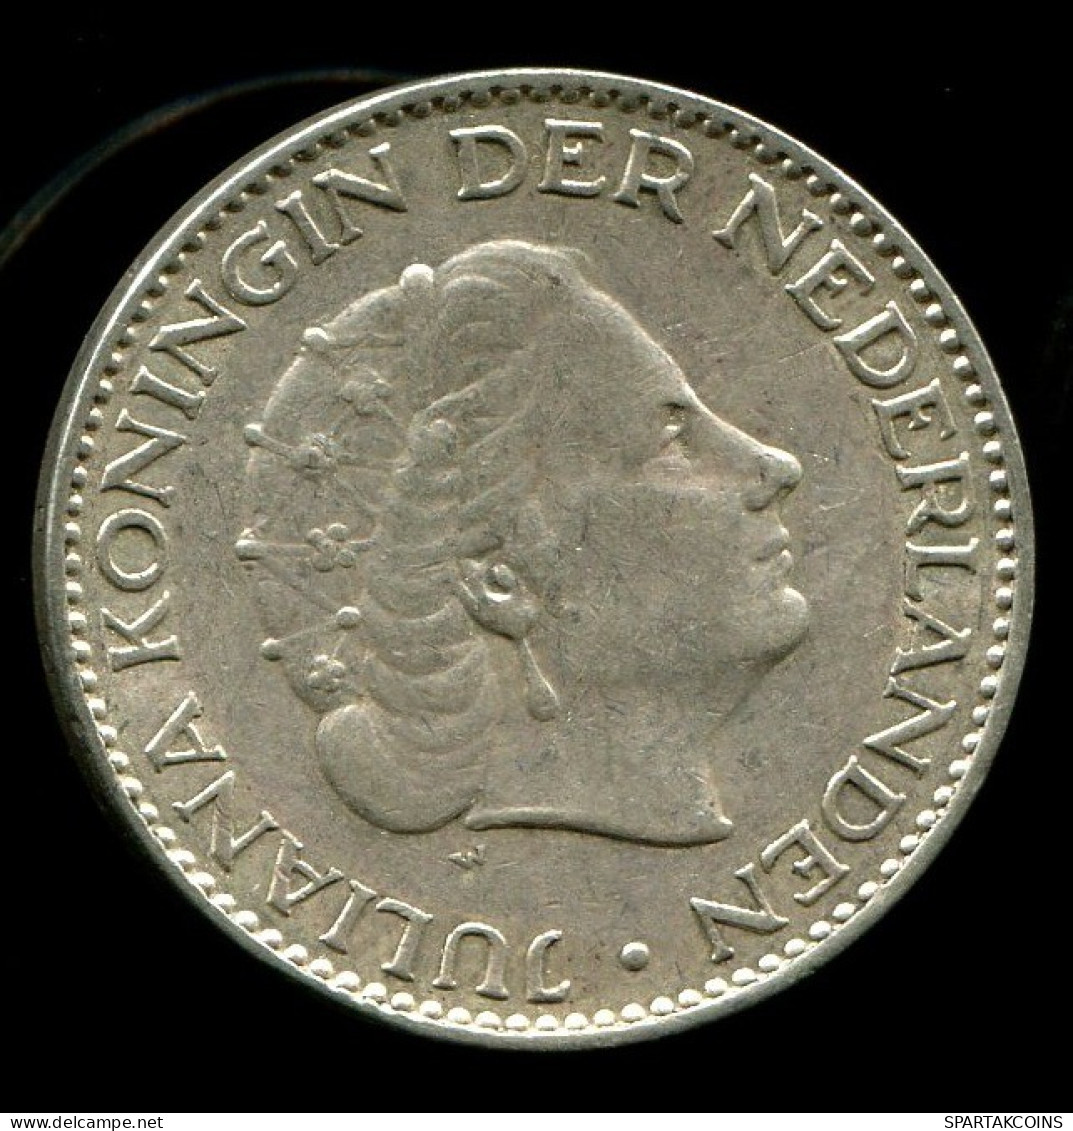 1 GULDEN 1957 NETHERLANDS Silver Coin #W10411.0.U.A - 1948-1980 : Juliana